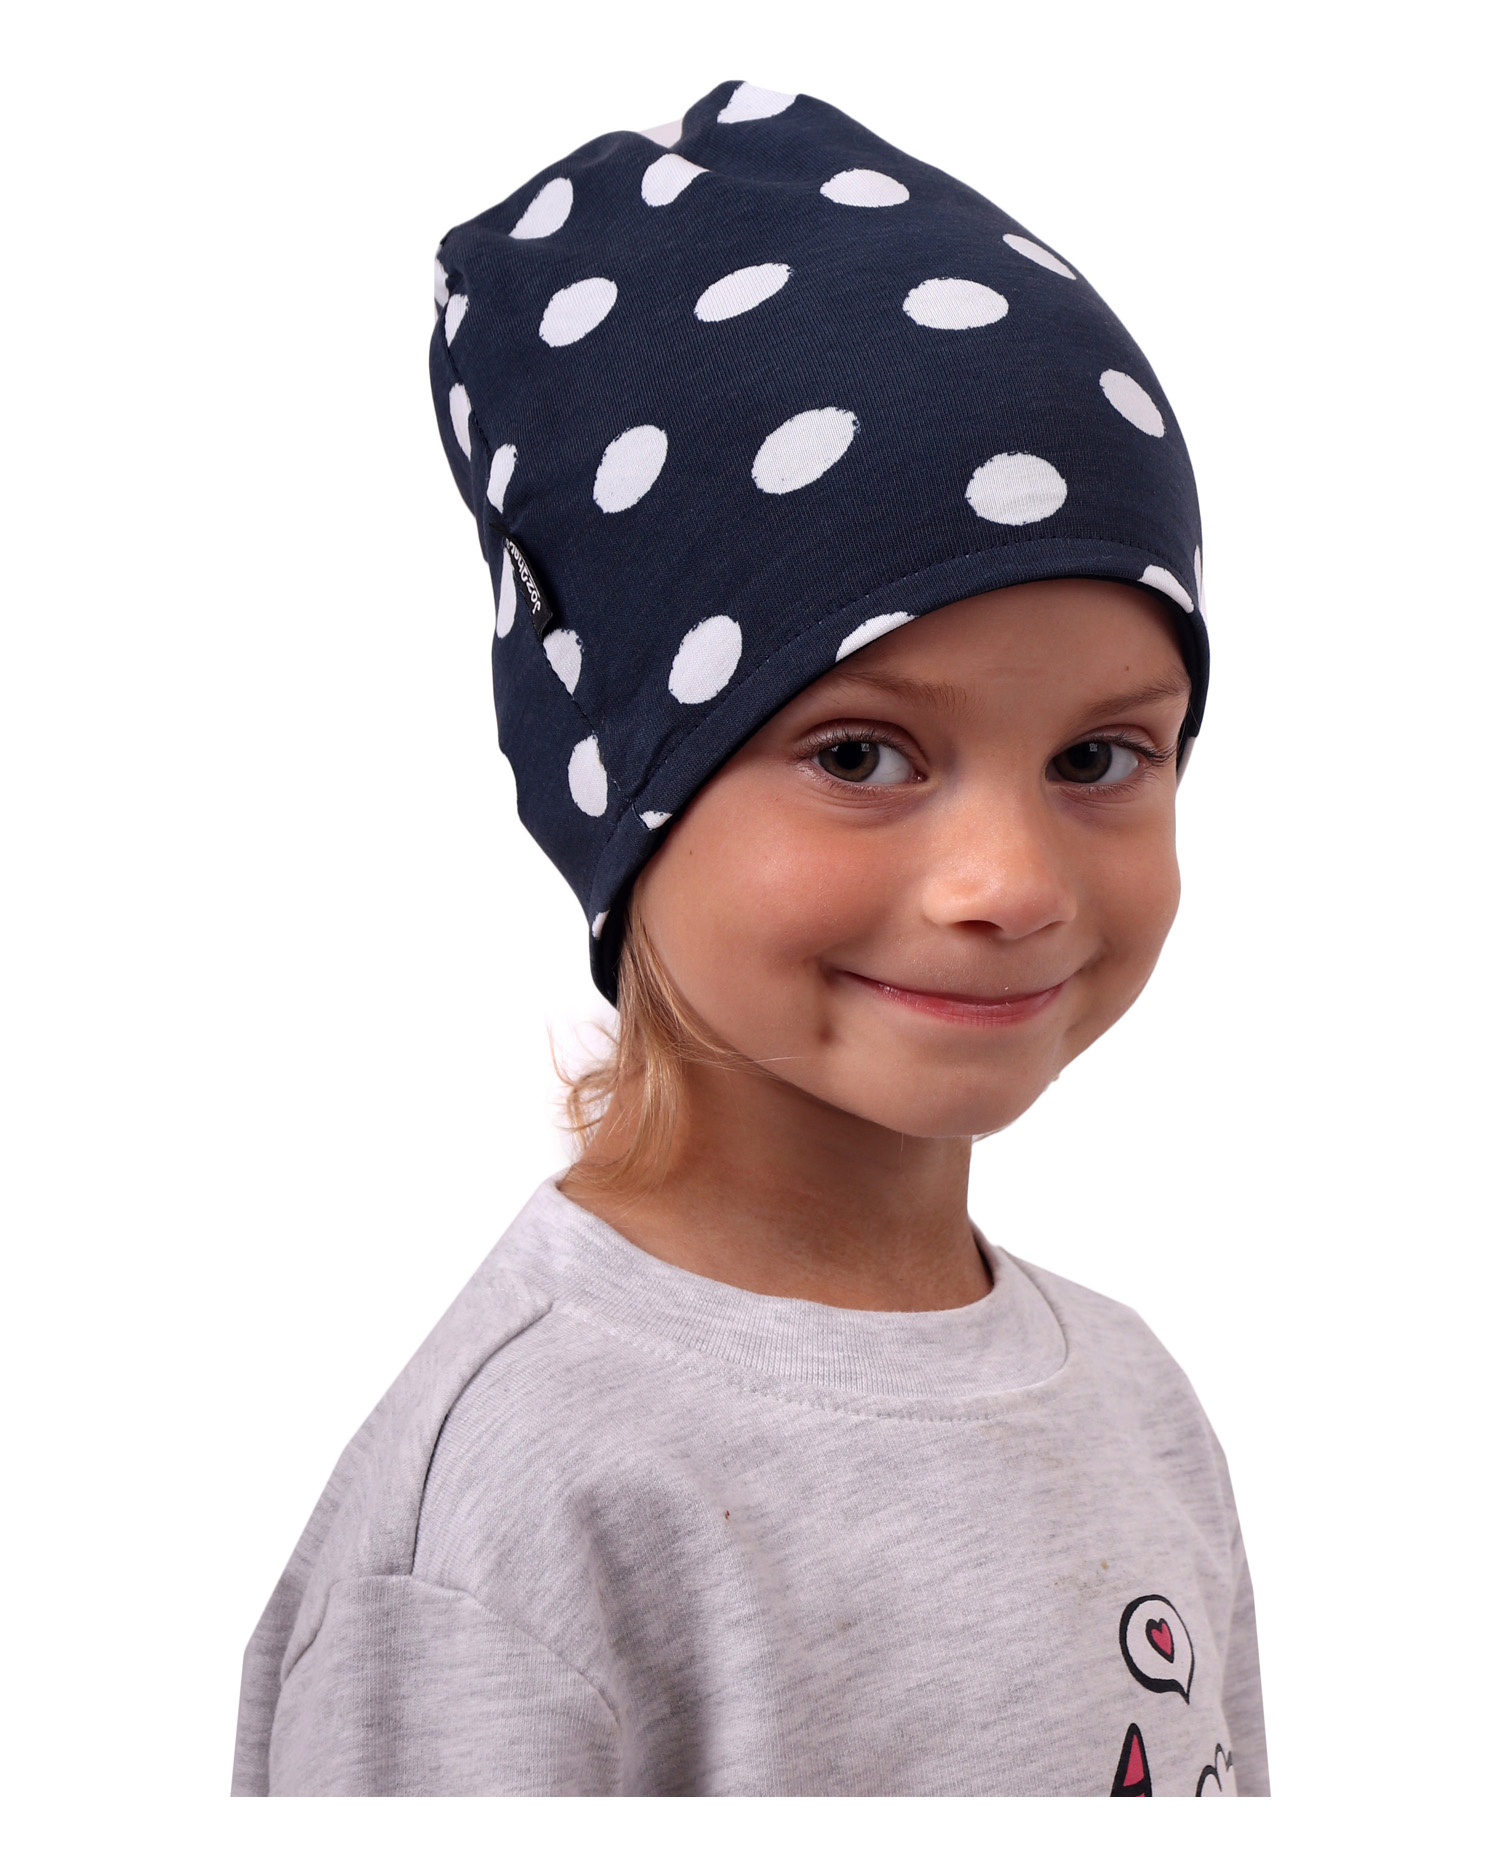 Detská čiapka bavlnená, obojstranná, čierna+modá s bodkami